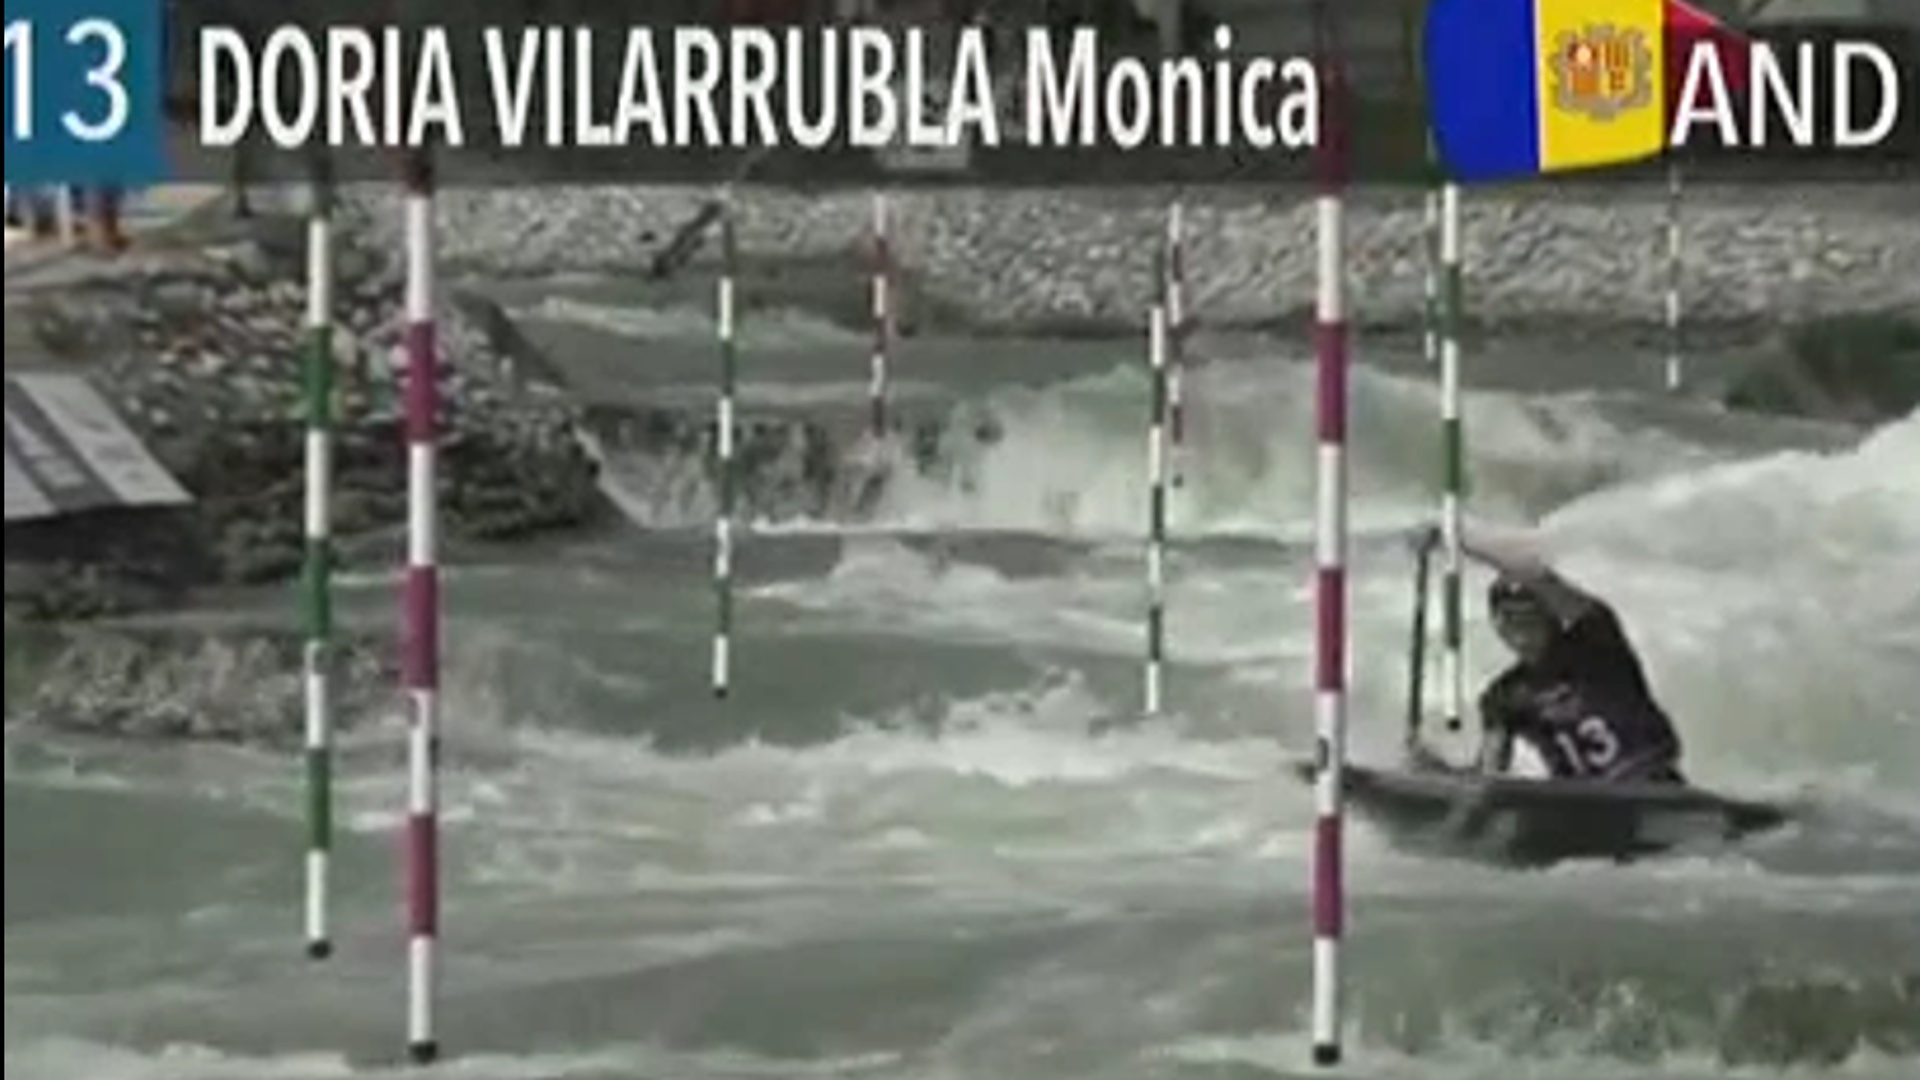 Mònica Doria es classifica per a les semifinals de canoa de l'Europeu sub-23